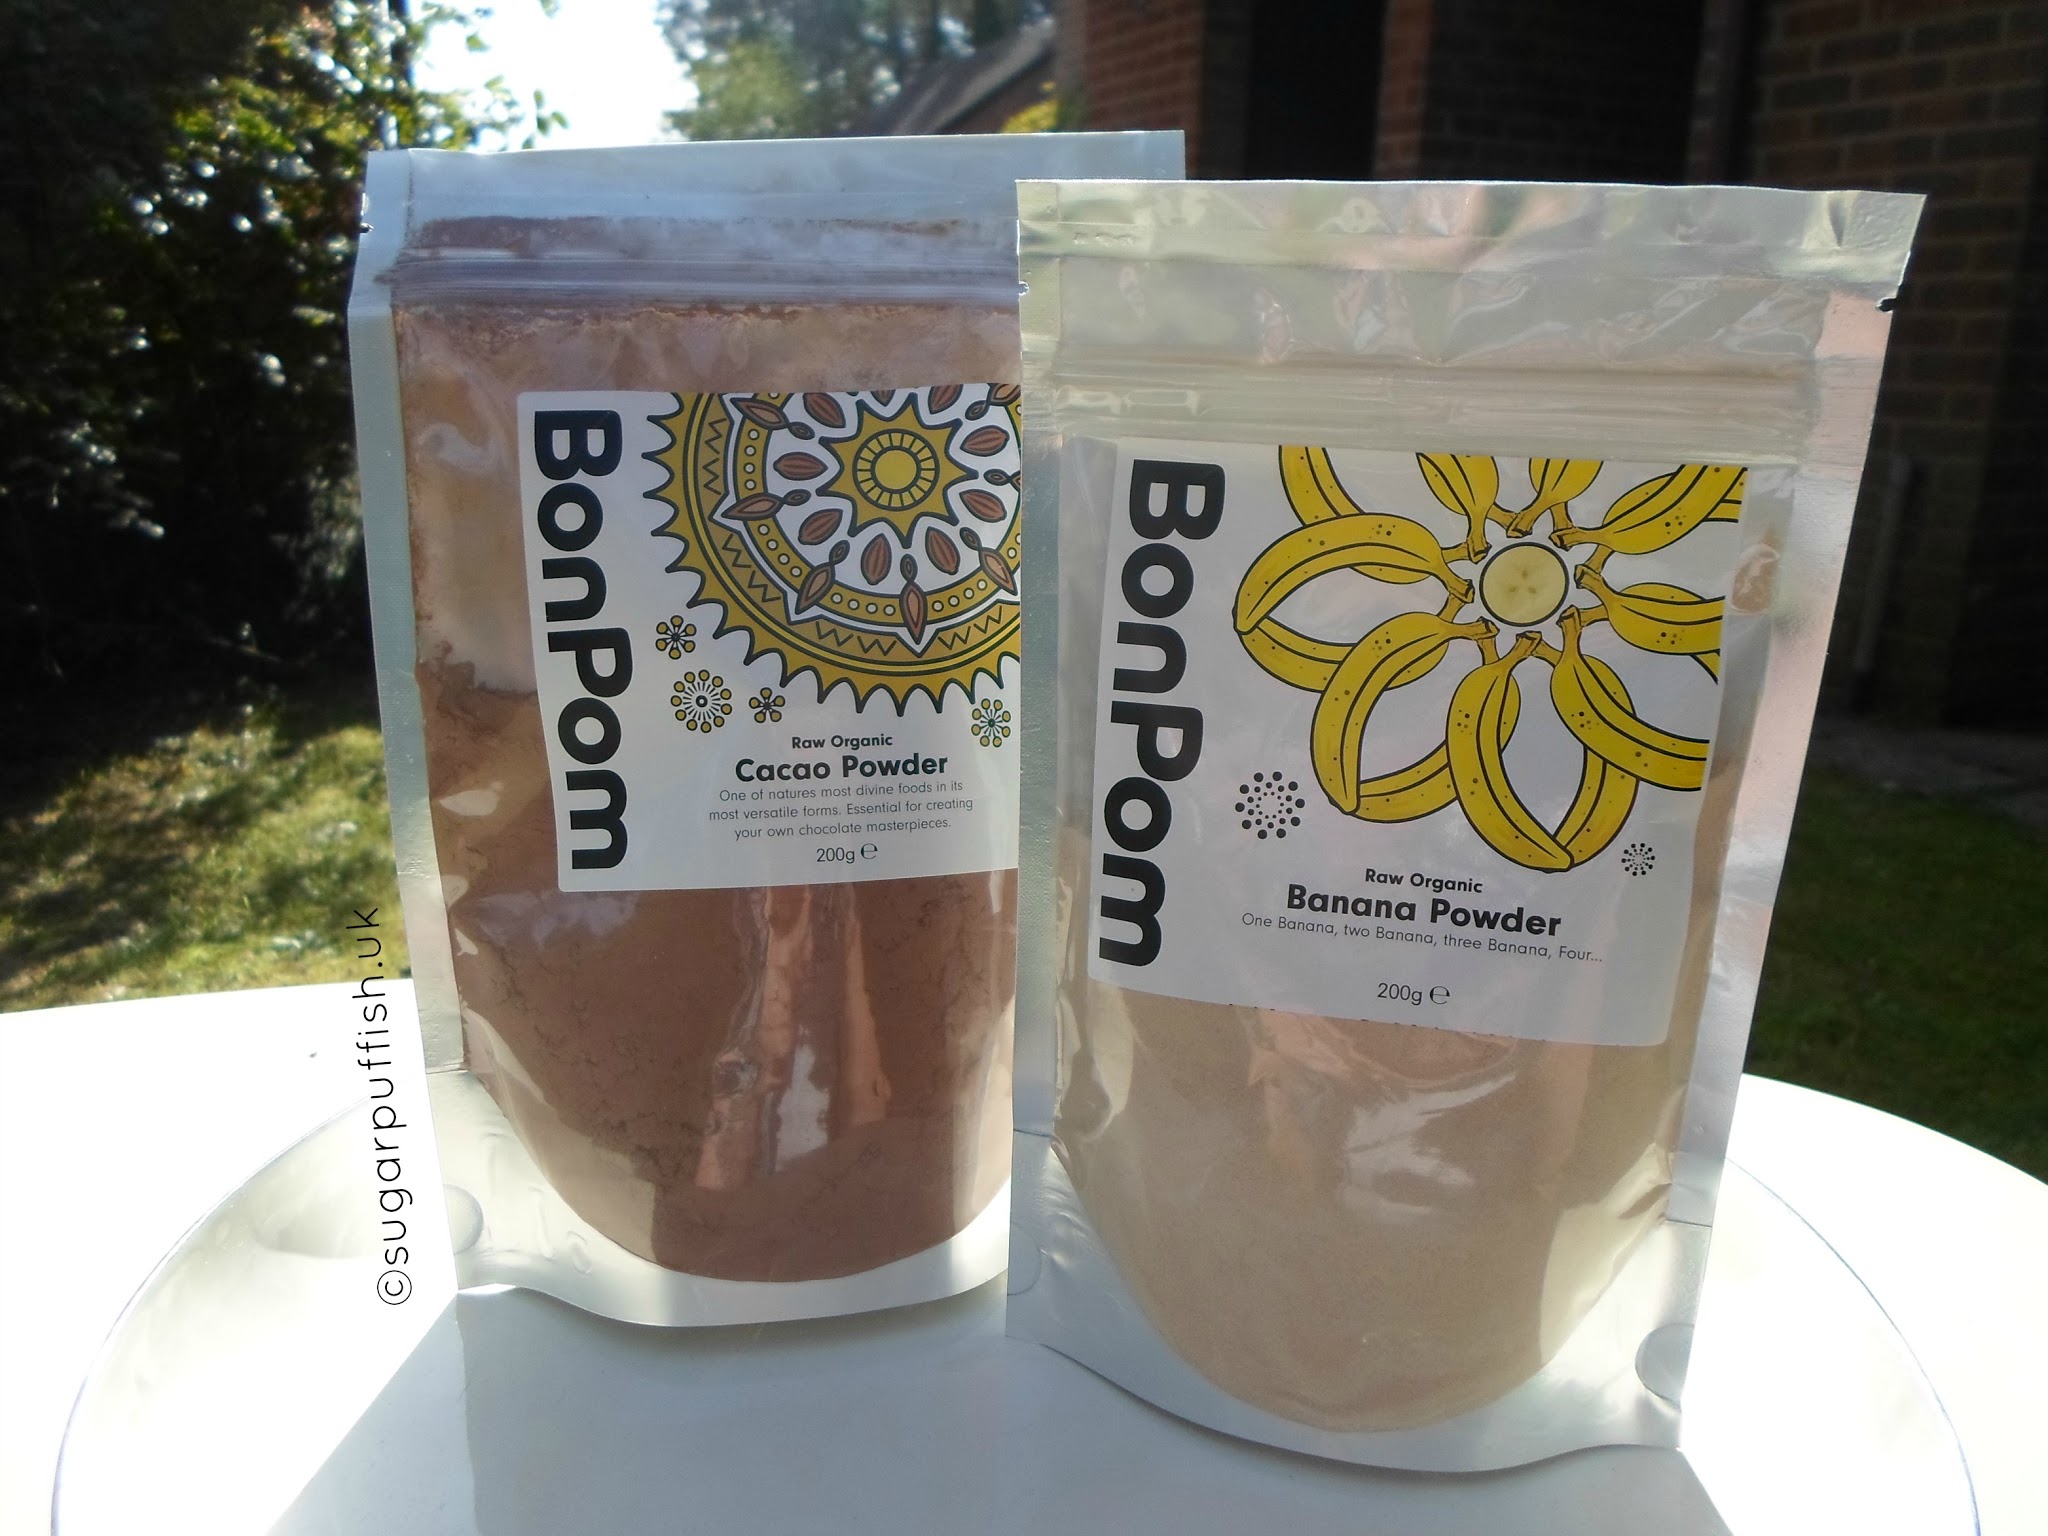 Review BonPom Cacao Powder and Banana Powder